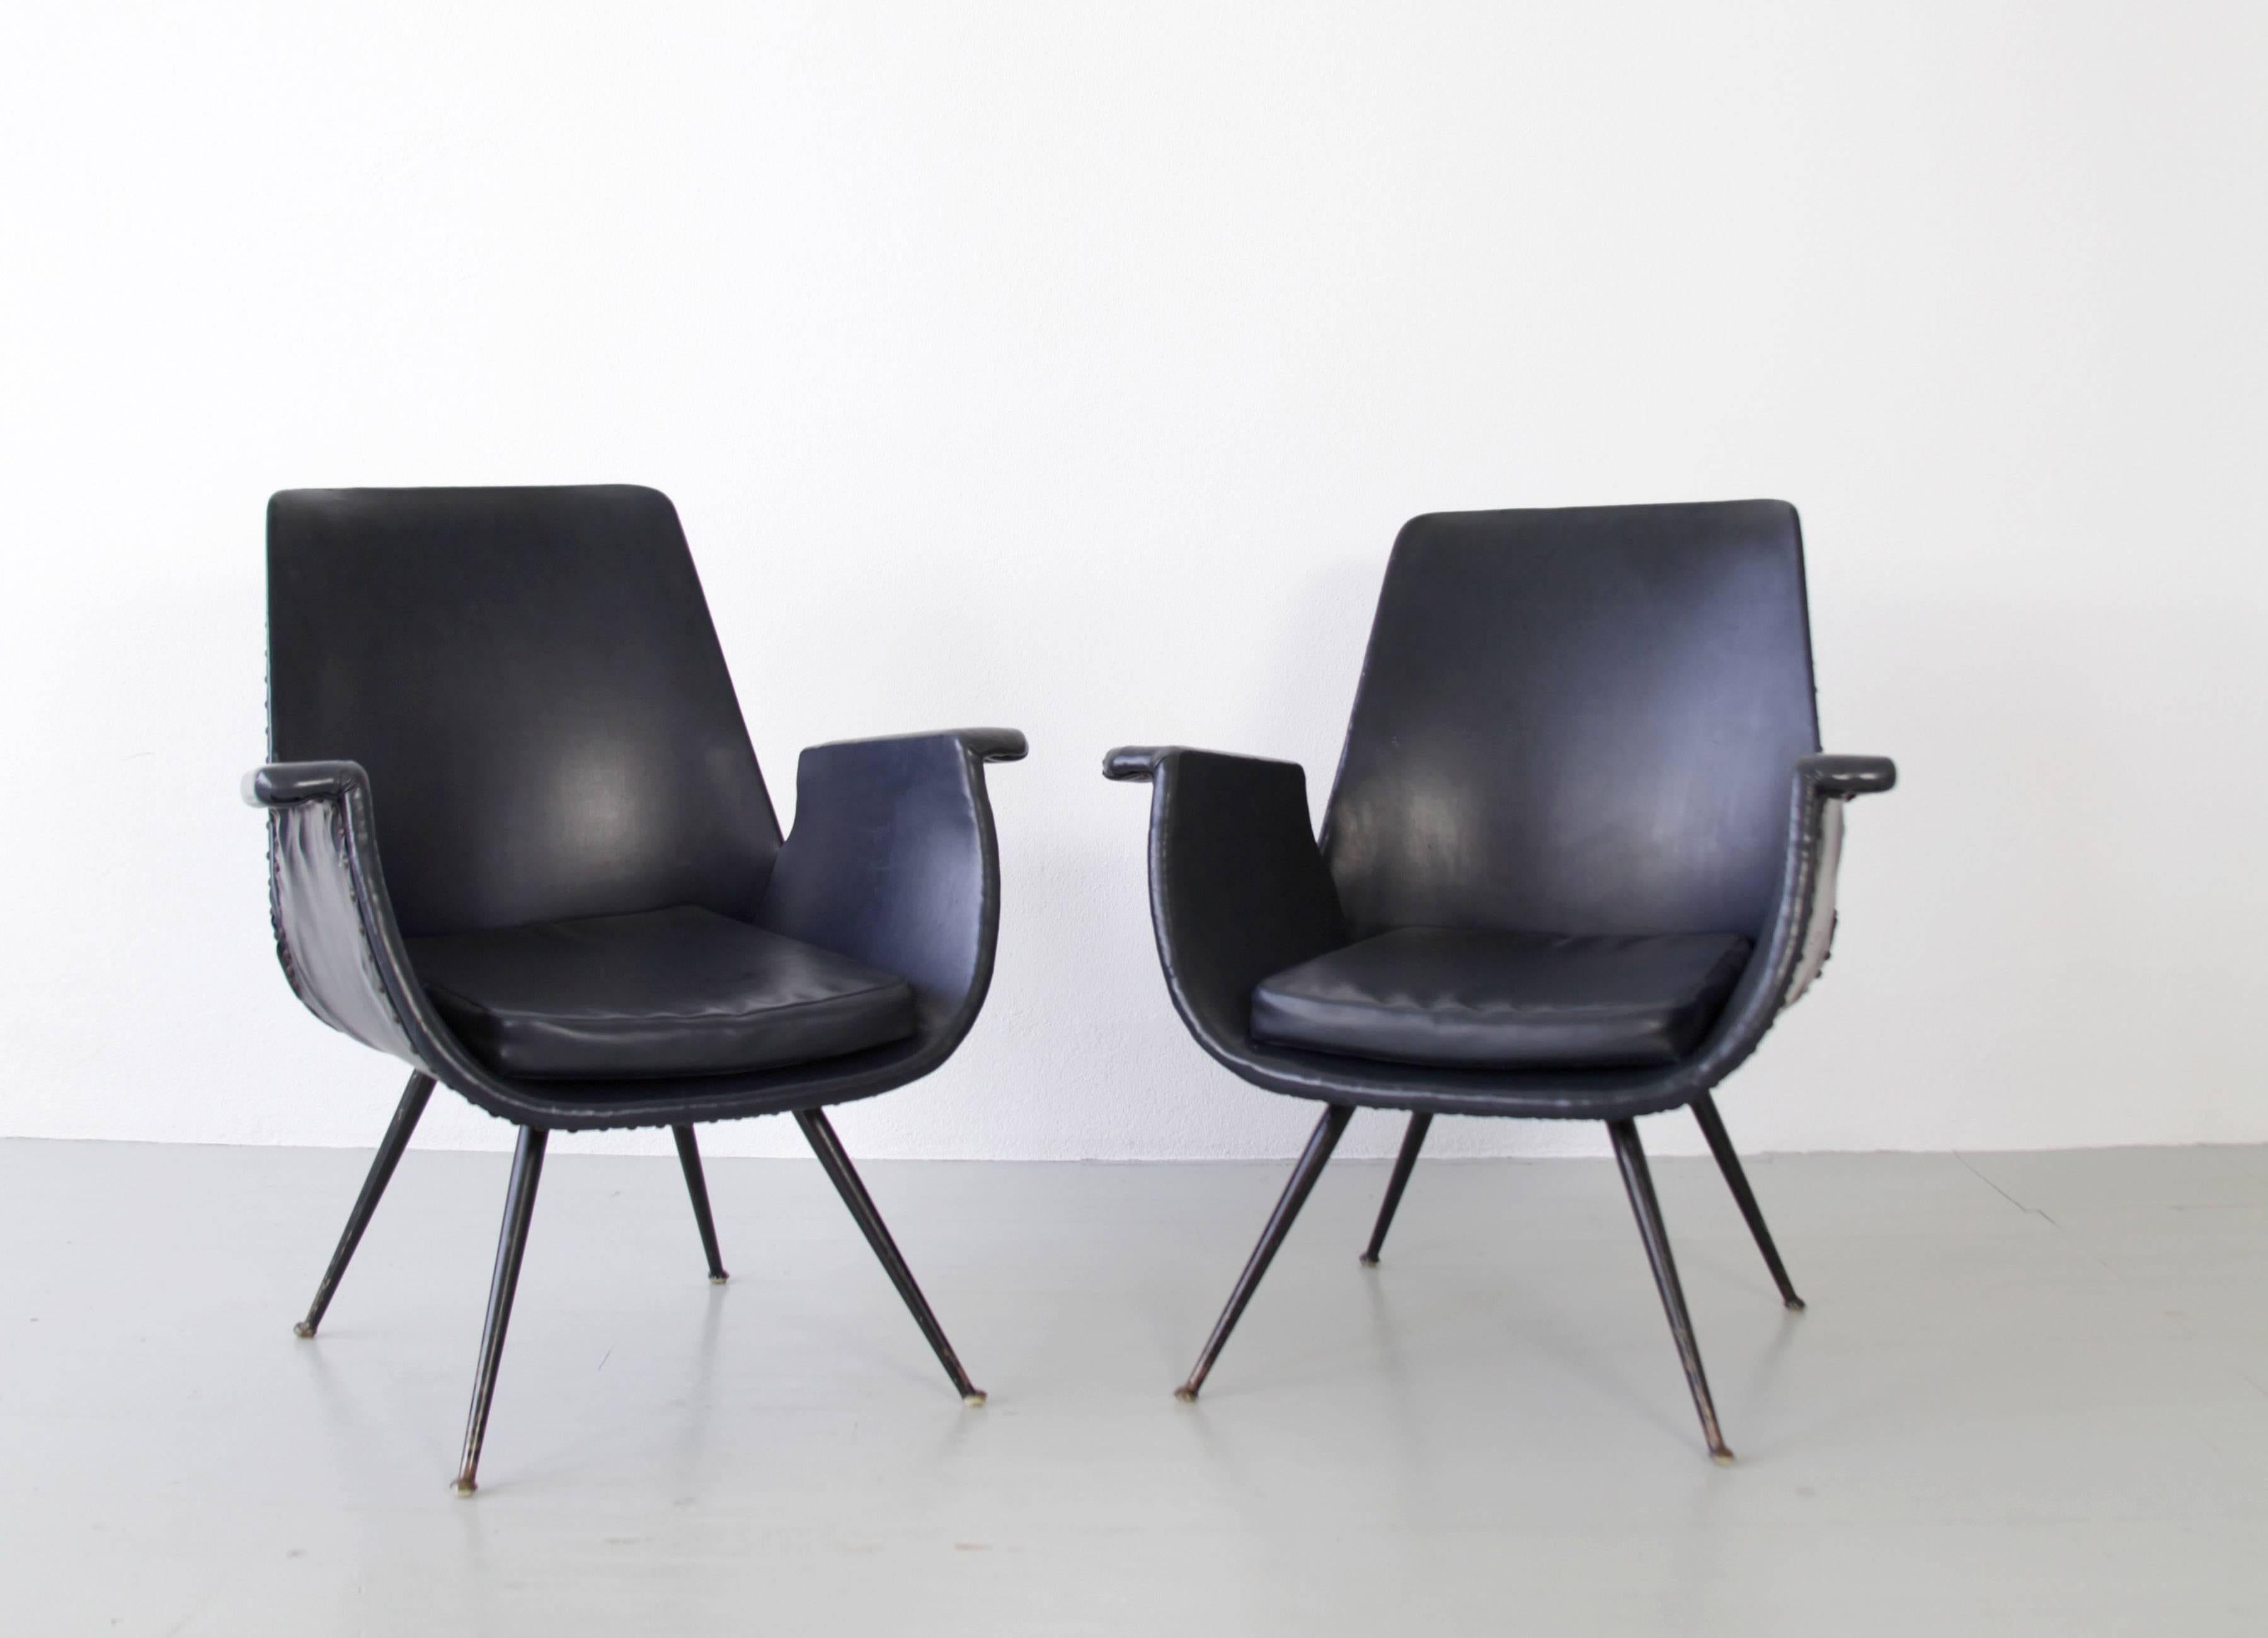 Très rare paire de fauteuils de Gastone Rinaldi avec sa tapisserie d'origine. Ce couple de chaises rares est dans son état d'origine avec quelques petits signes d'utilisation mais très authentiques.

N'hésitez pas à nous contacter pour obtenir des